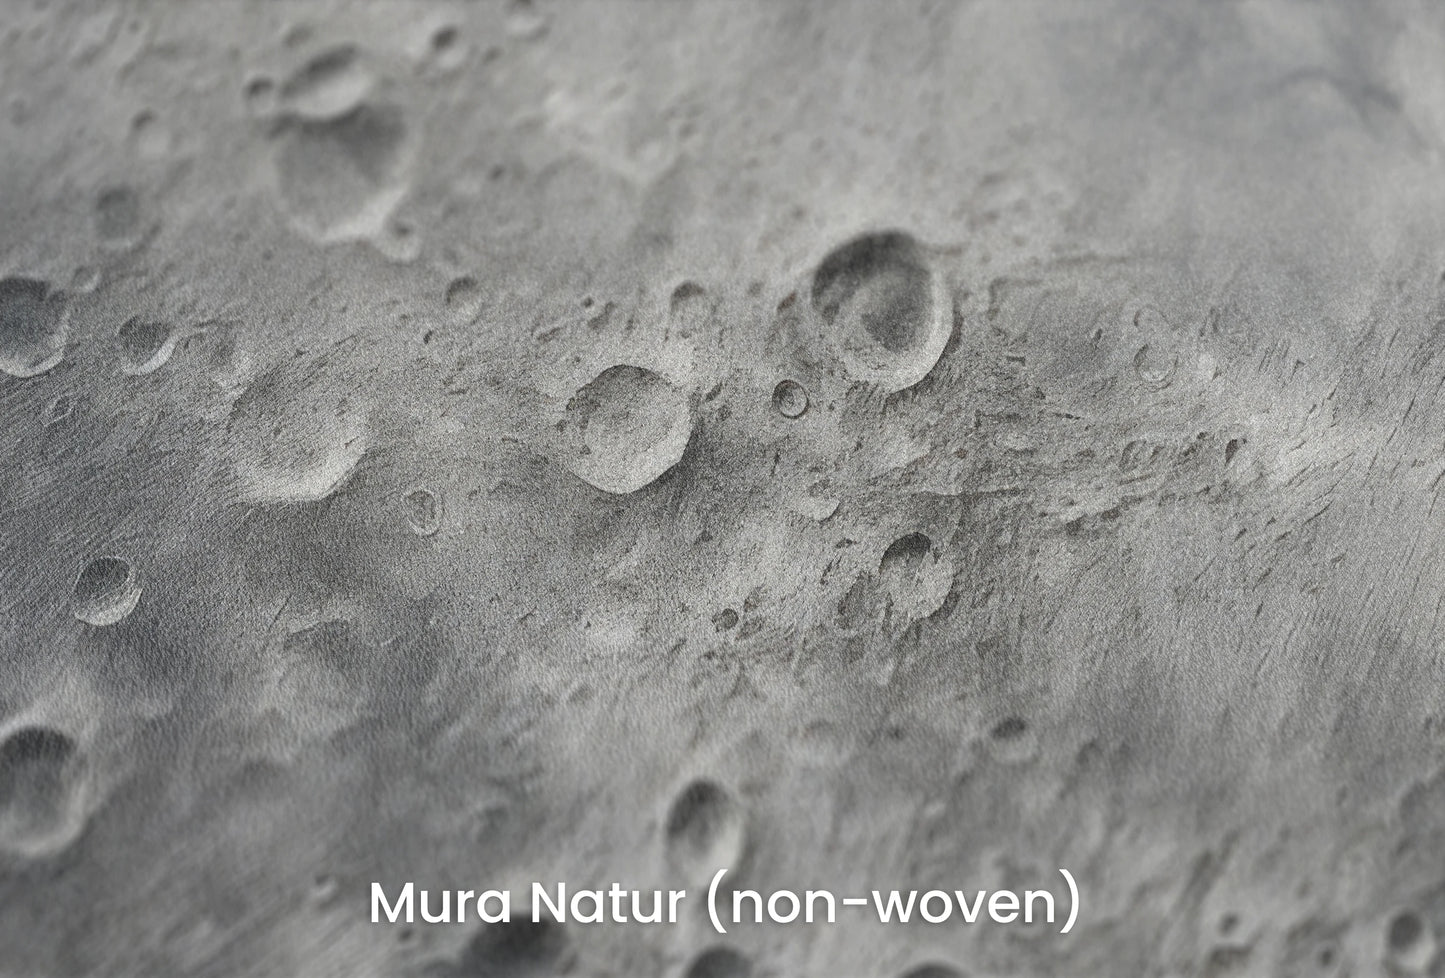 Zbliżenie na artystyczną fototapetę o nazwie Moon's Monochrome 2 na podłożu Mura Natur (non-woven) - naturalne i ekologiczne podłoże.